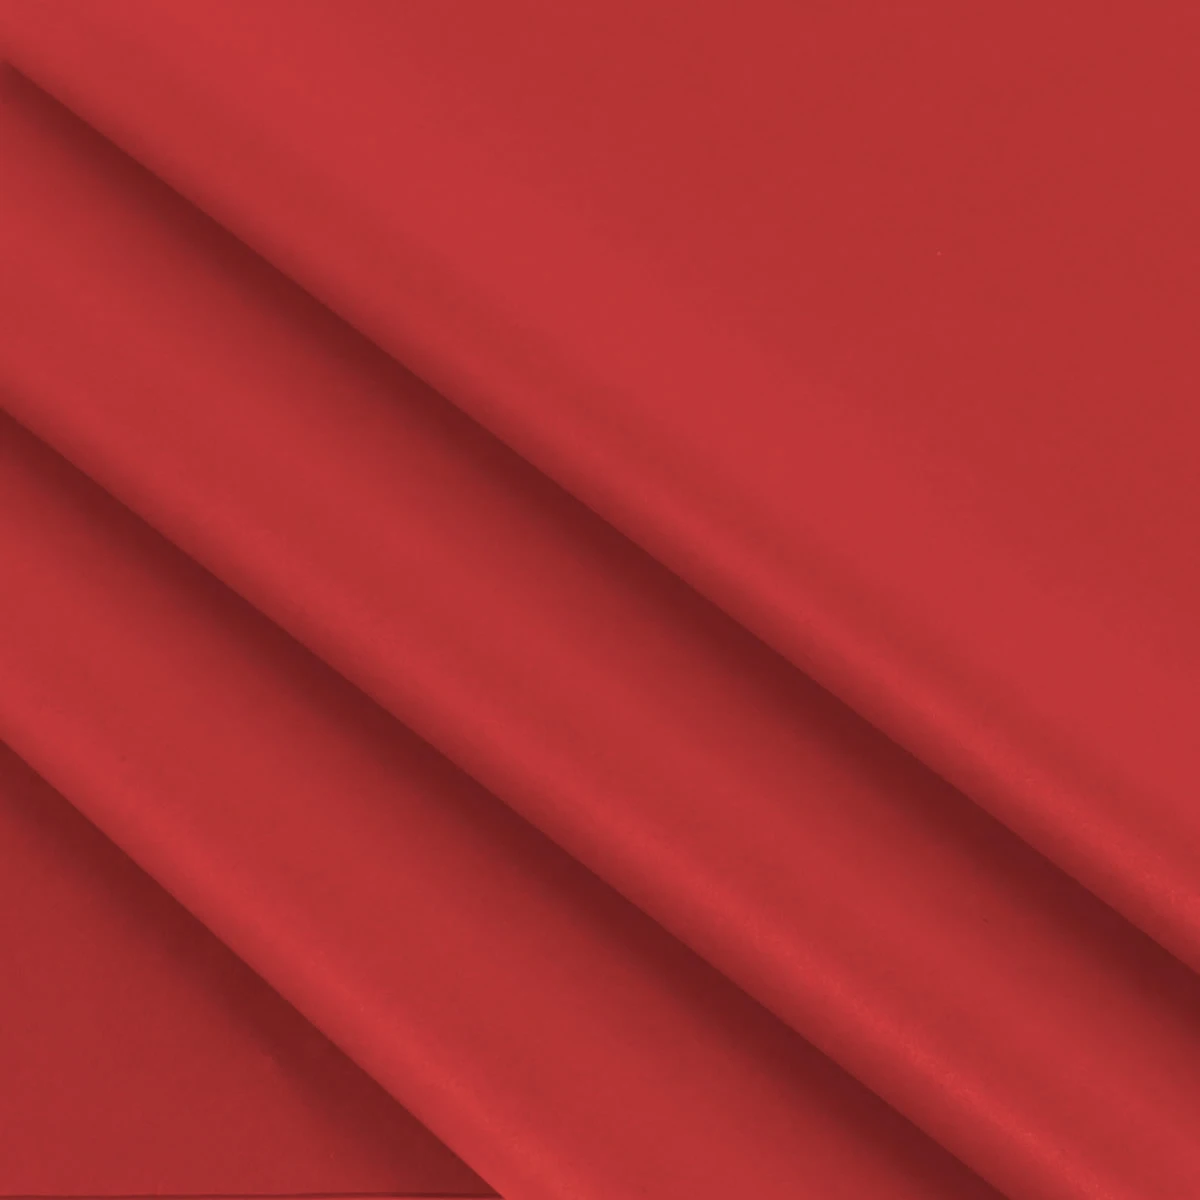 Vloeipapier rood 50 x 70 cm (480 vellen)